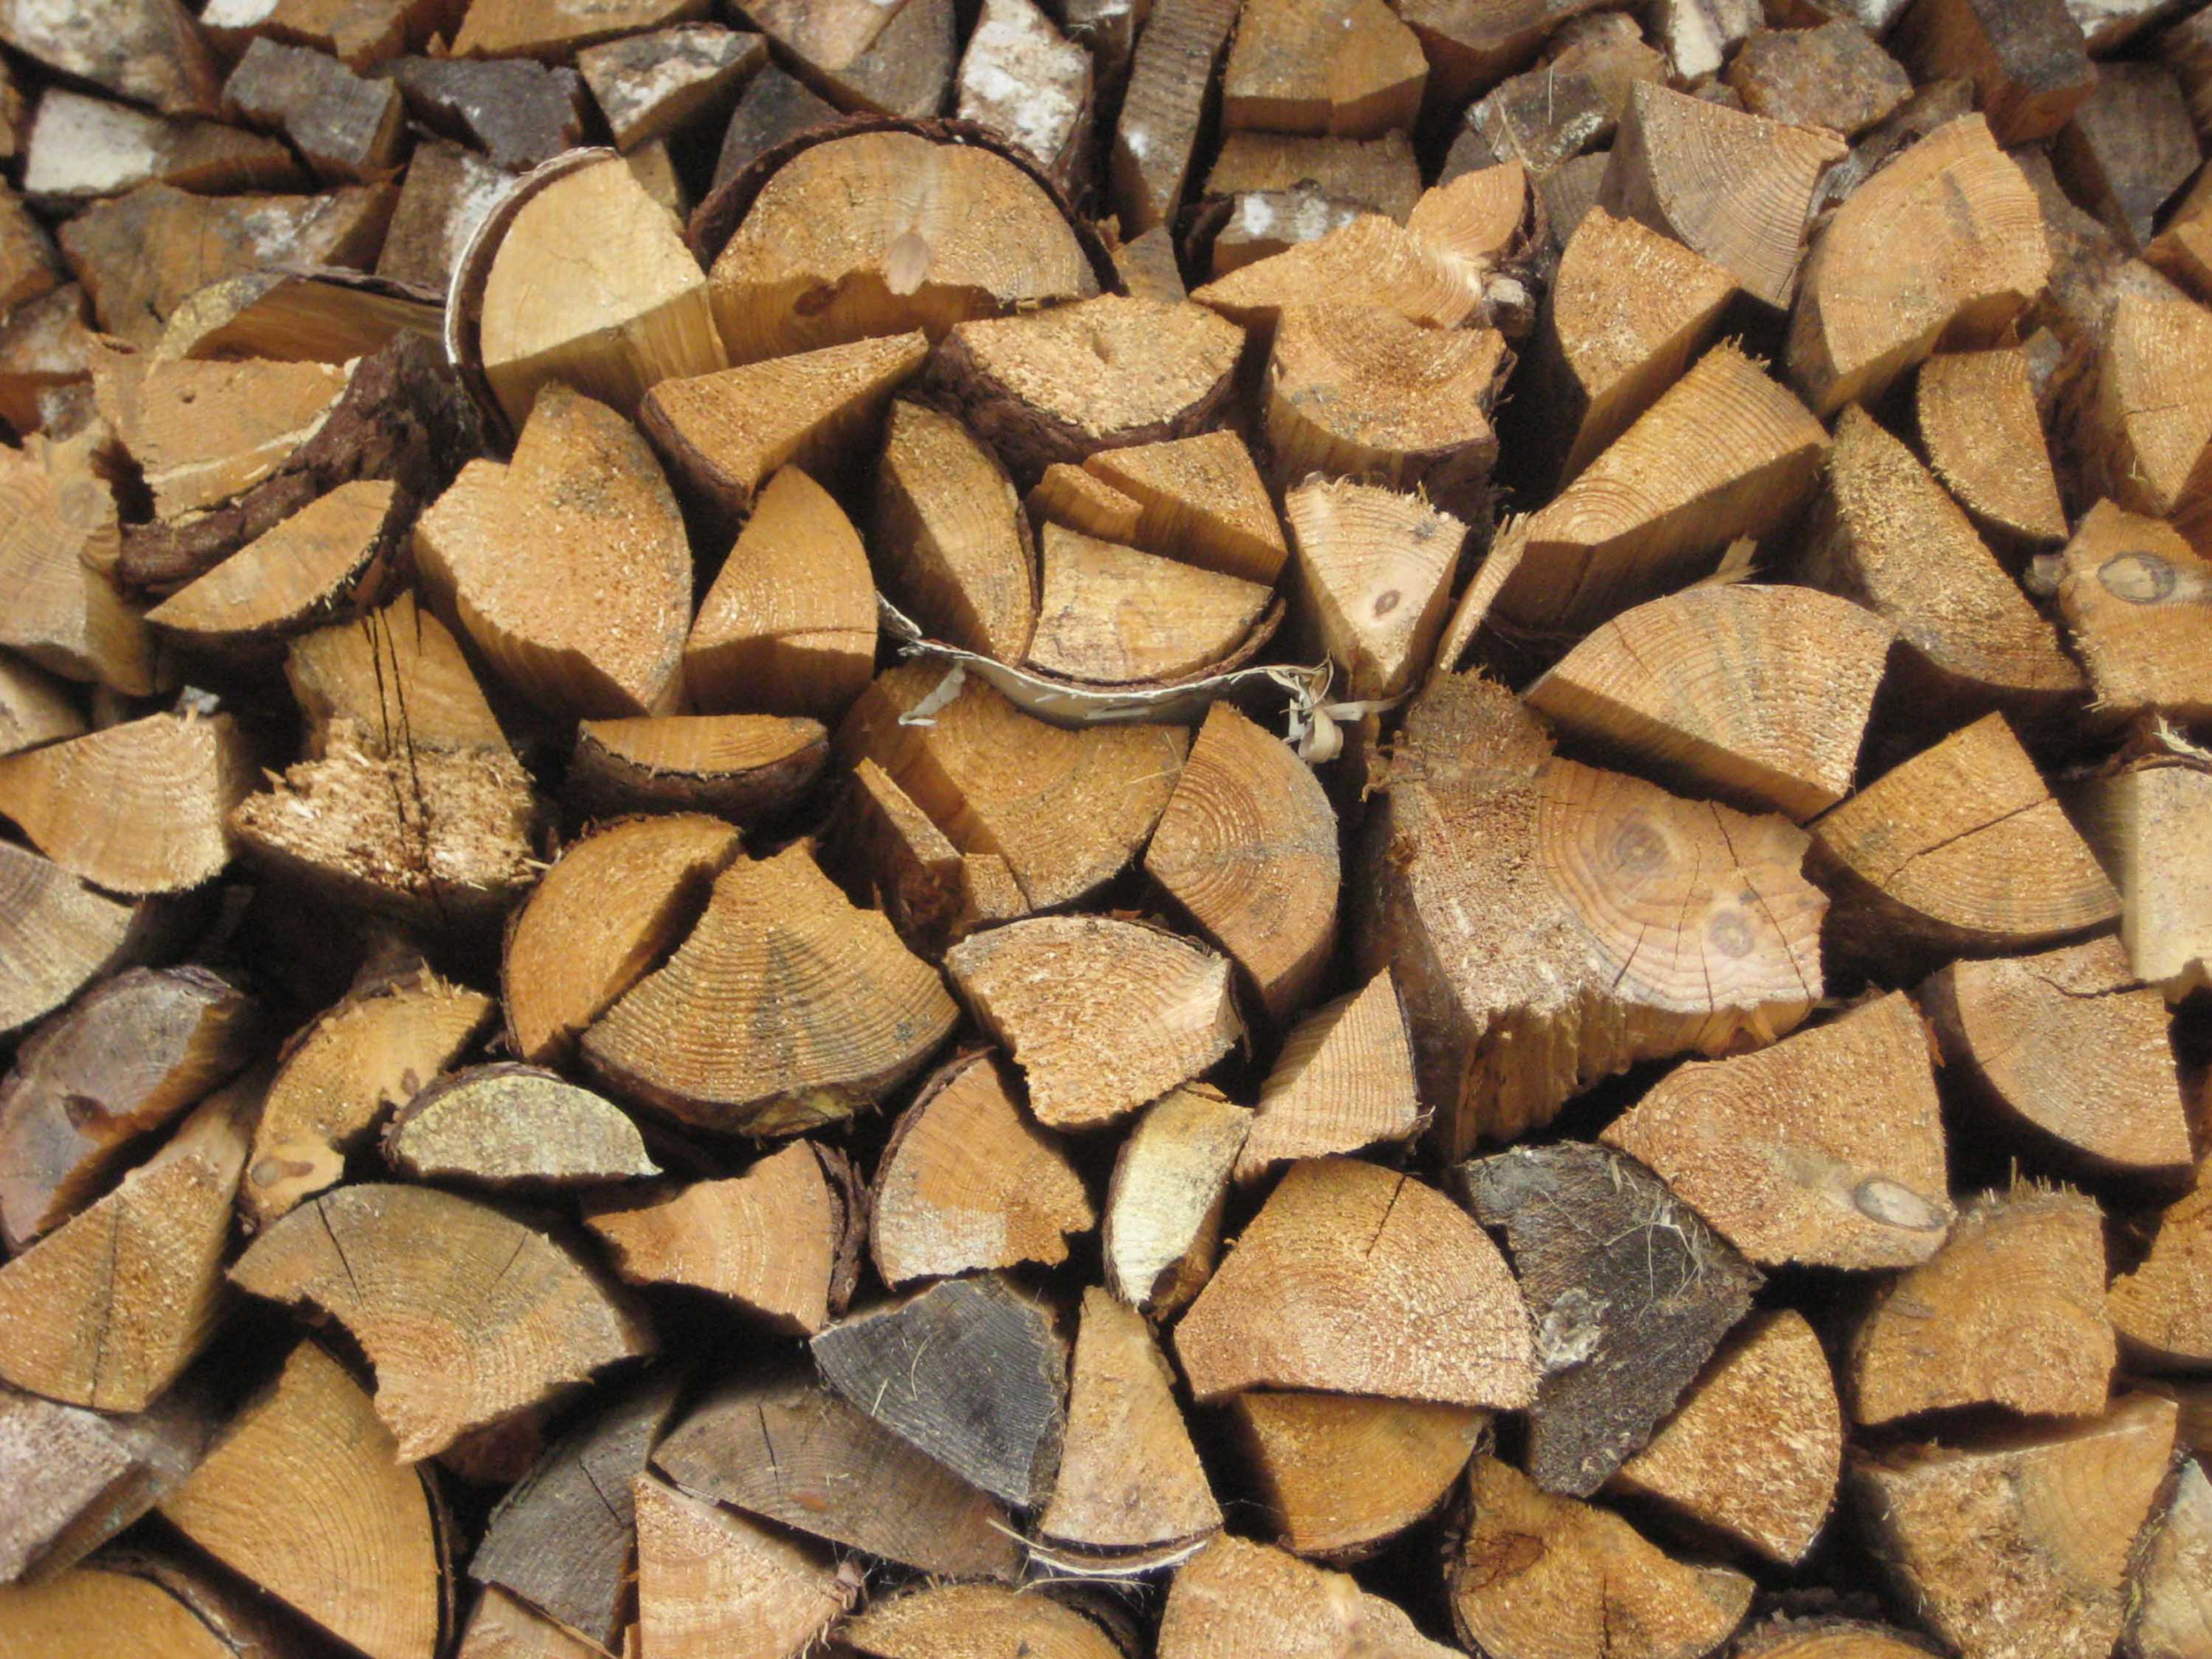 Brennholz vom Forstamt: Zunehmende Nachfrage, leicht steigende Preise